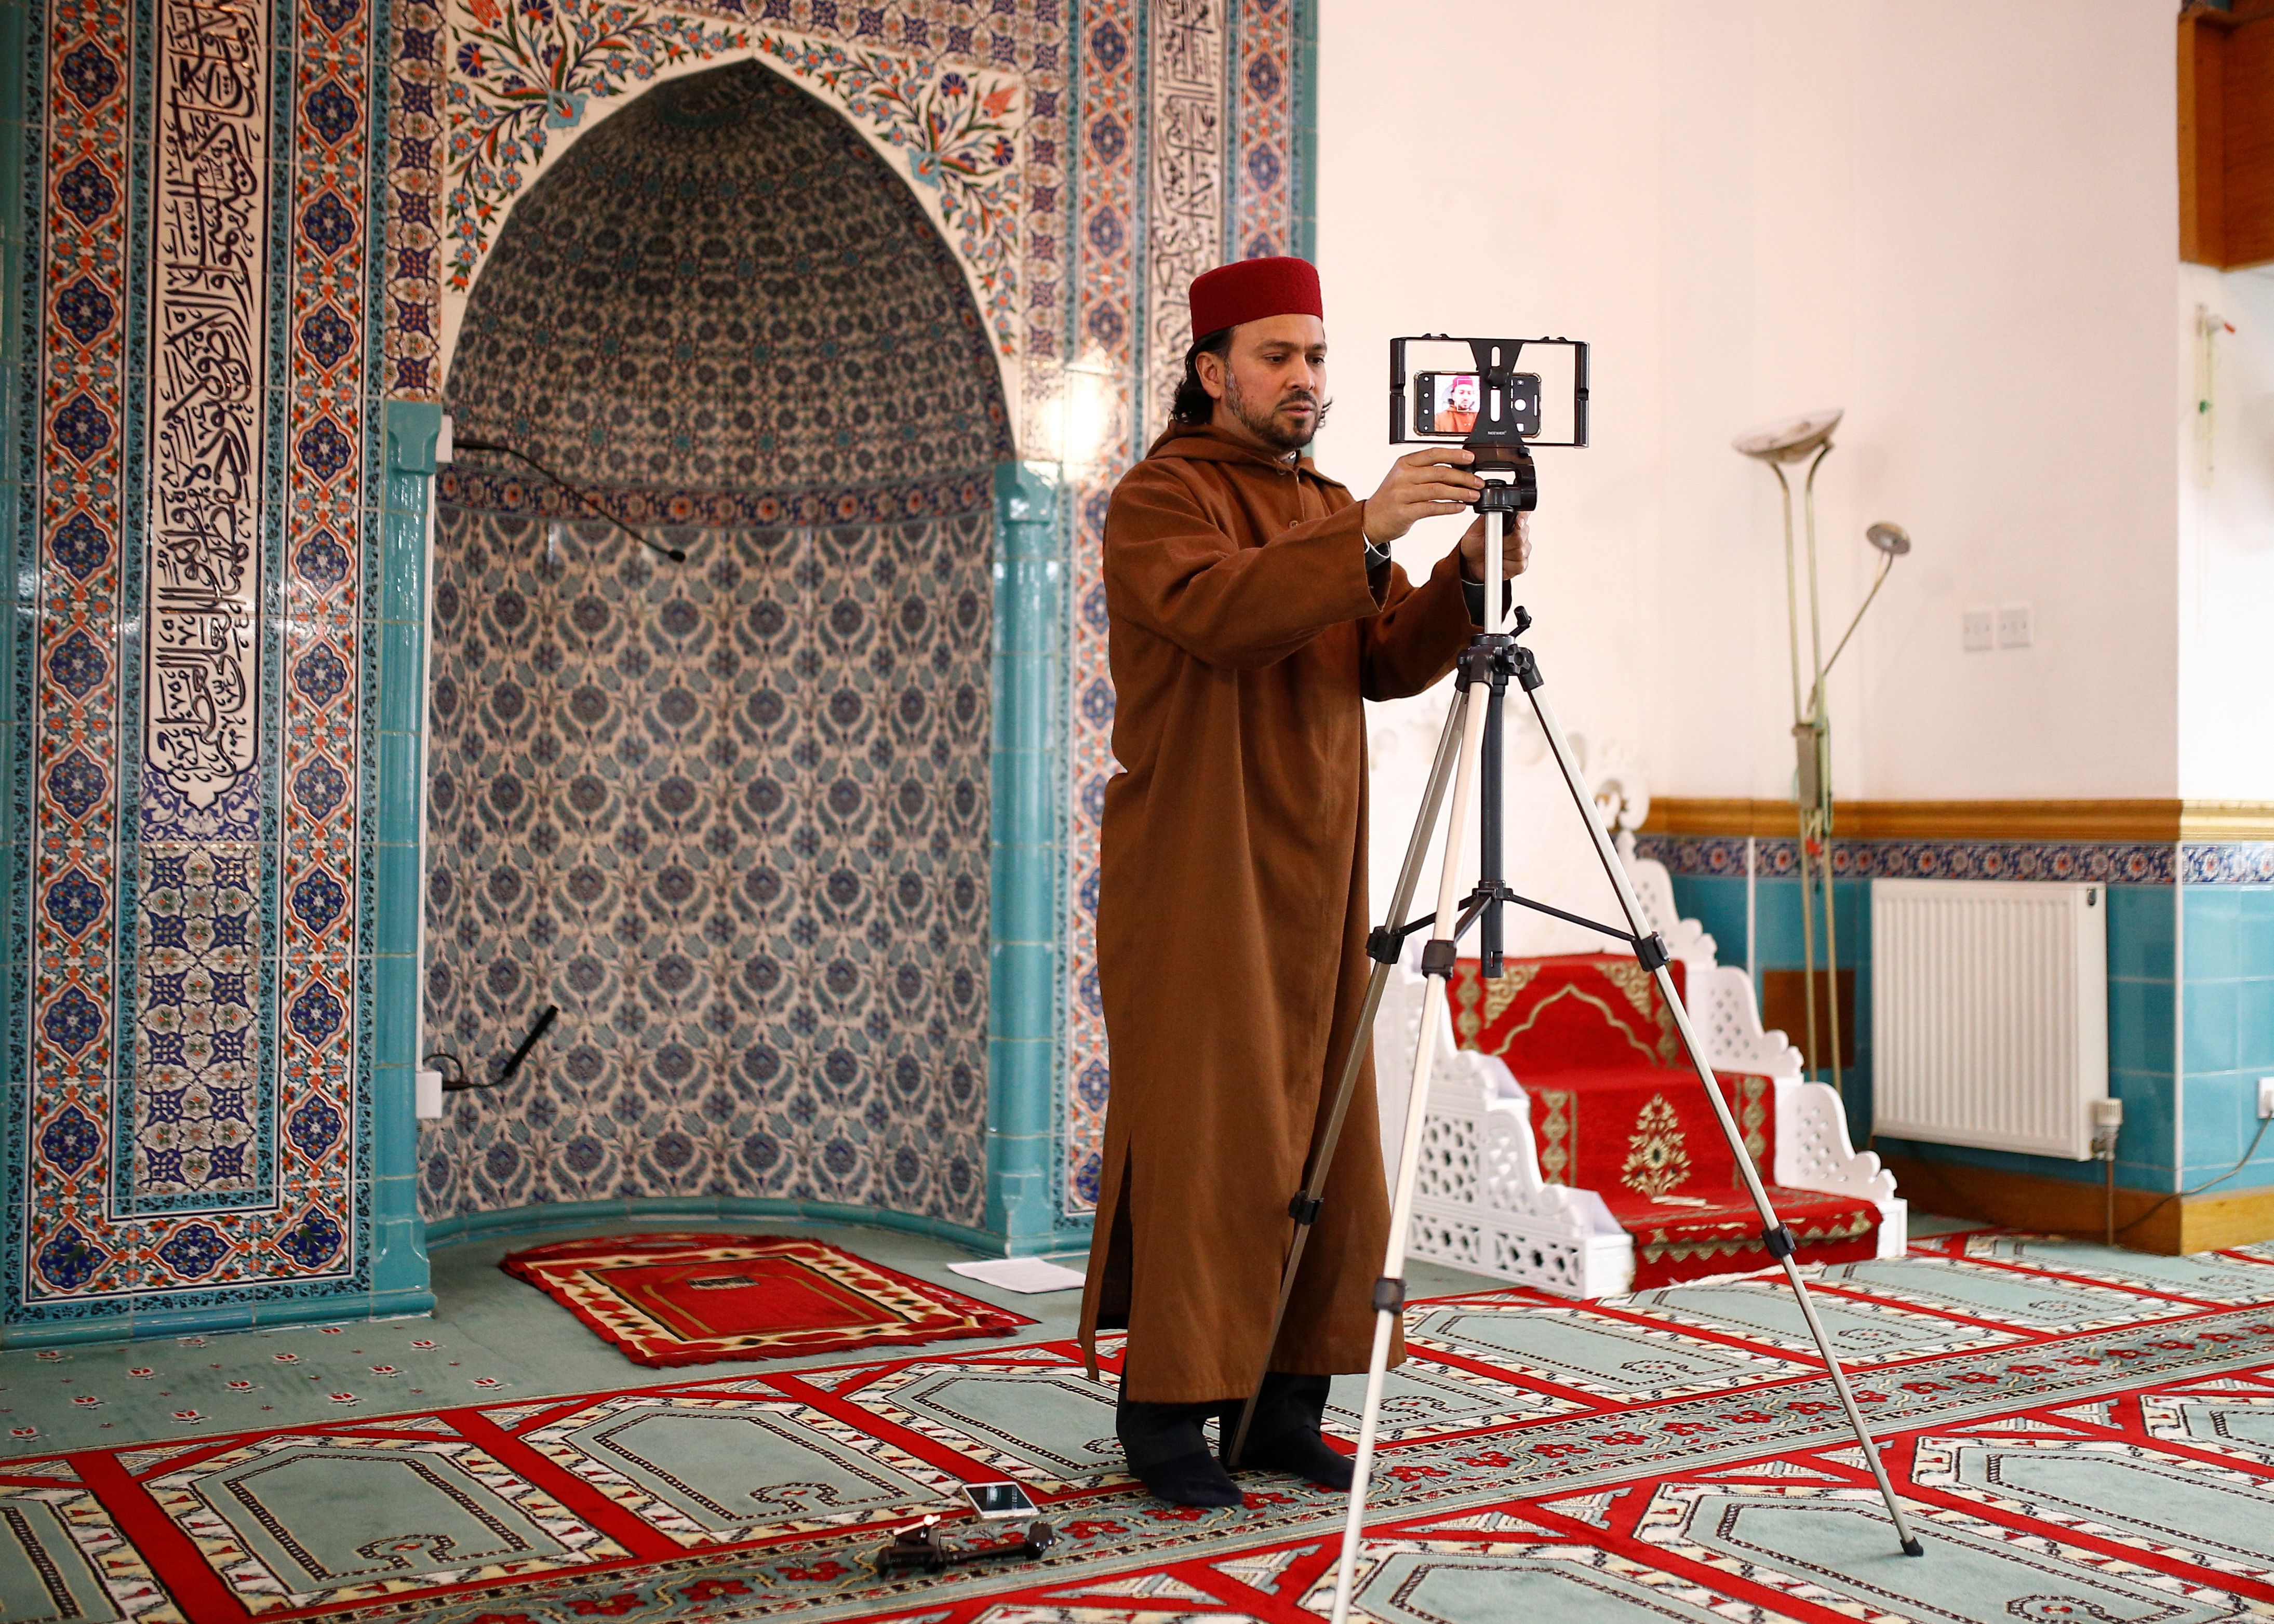 خطيب المسجد يجهز الفيديو قبل بدء الخطبة